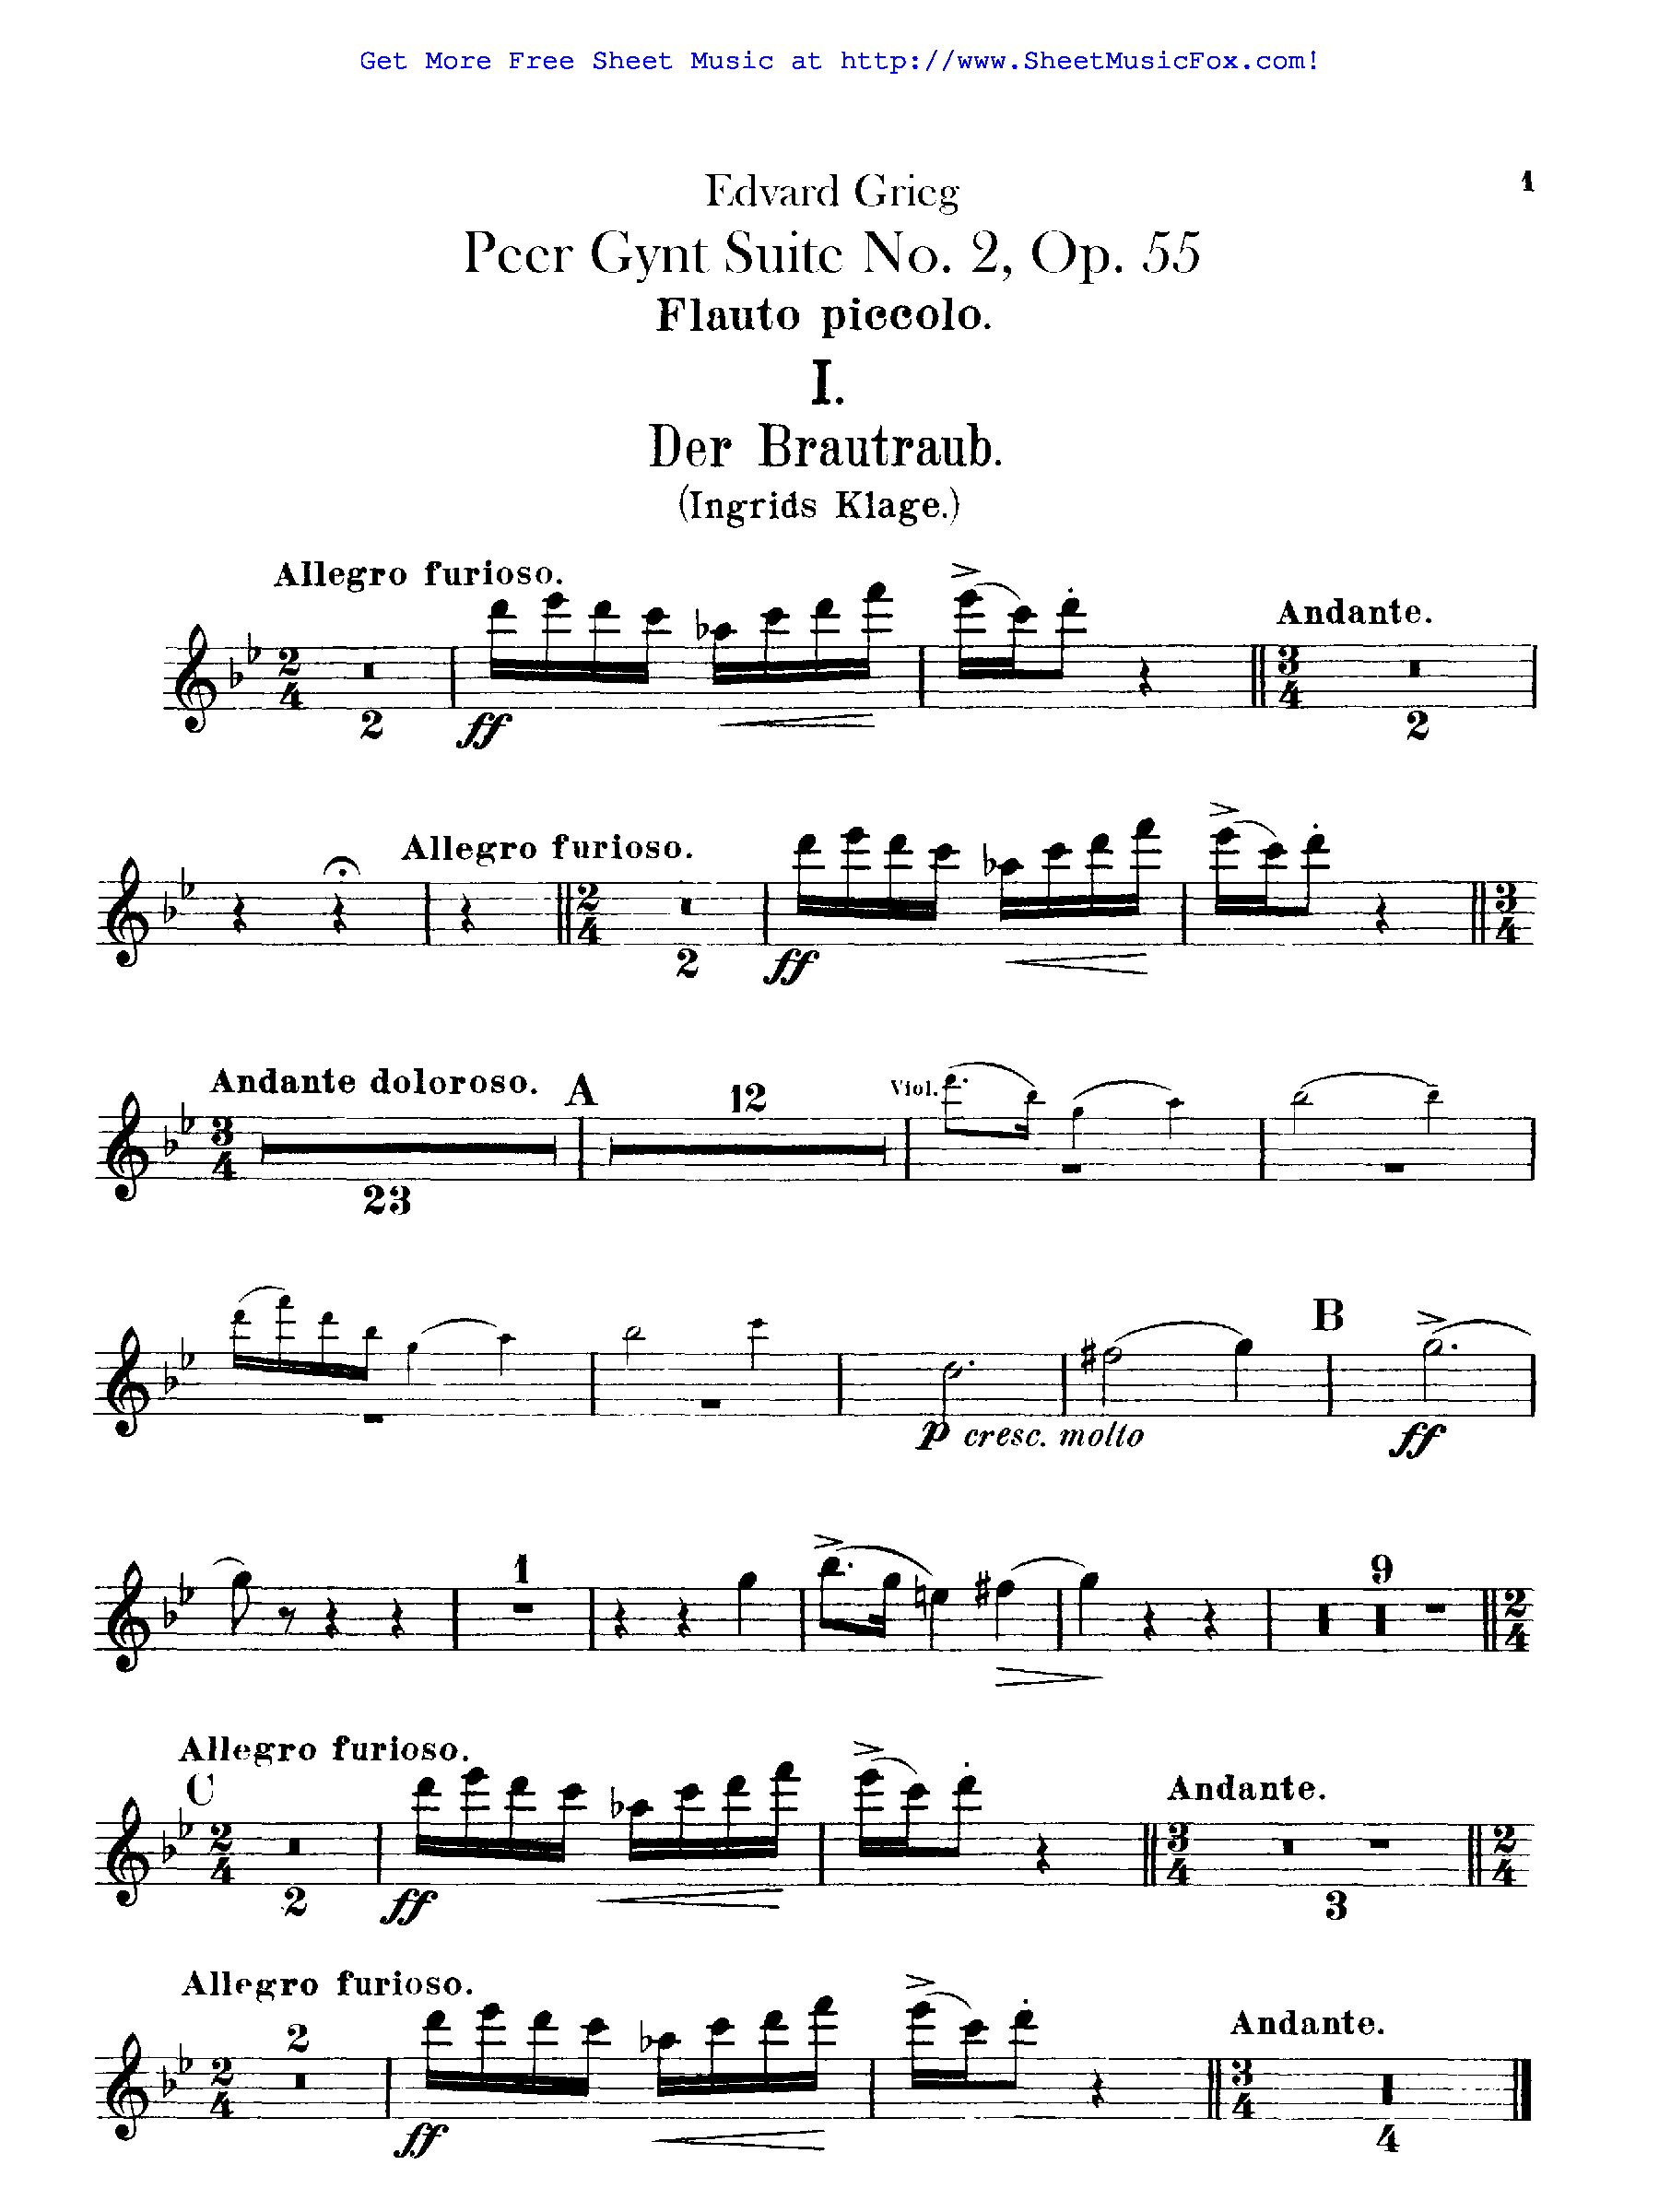 Furioso sheet music free